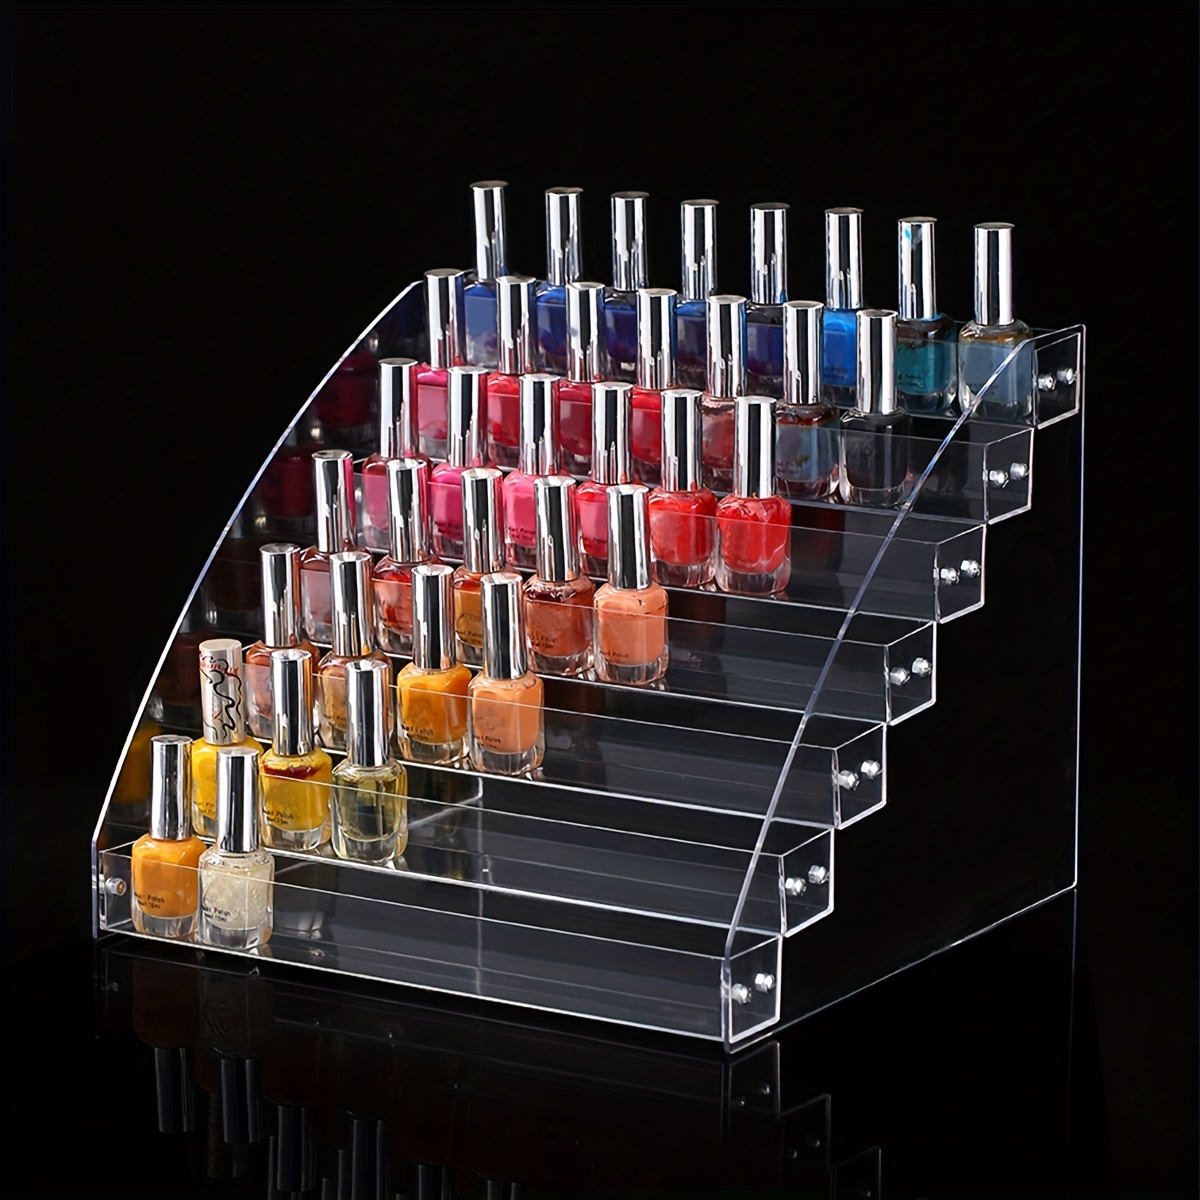 Caja de almacenamiento de esmalte de uñas, organizador multicapa